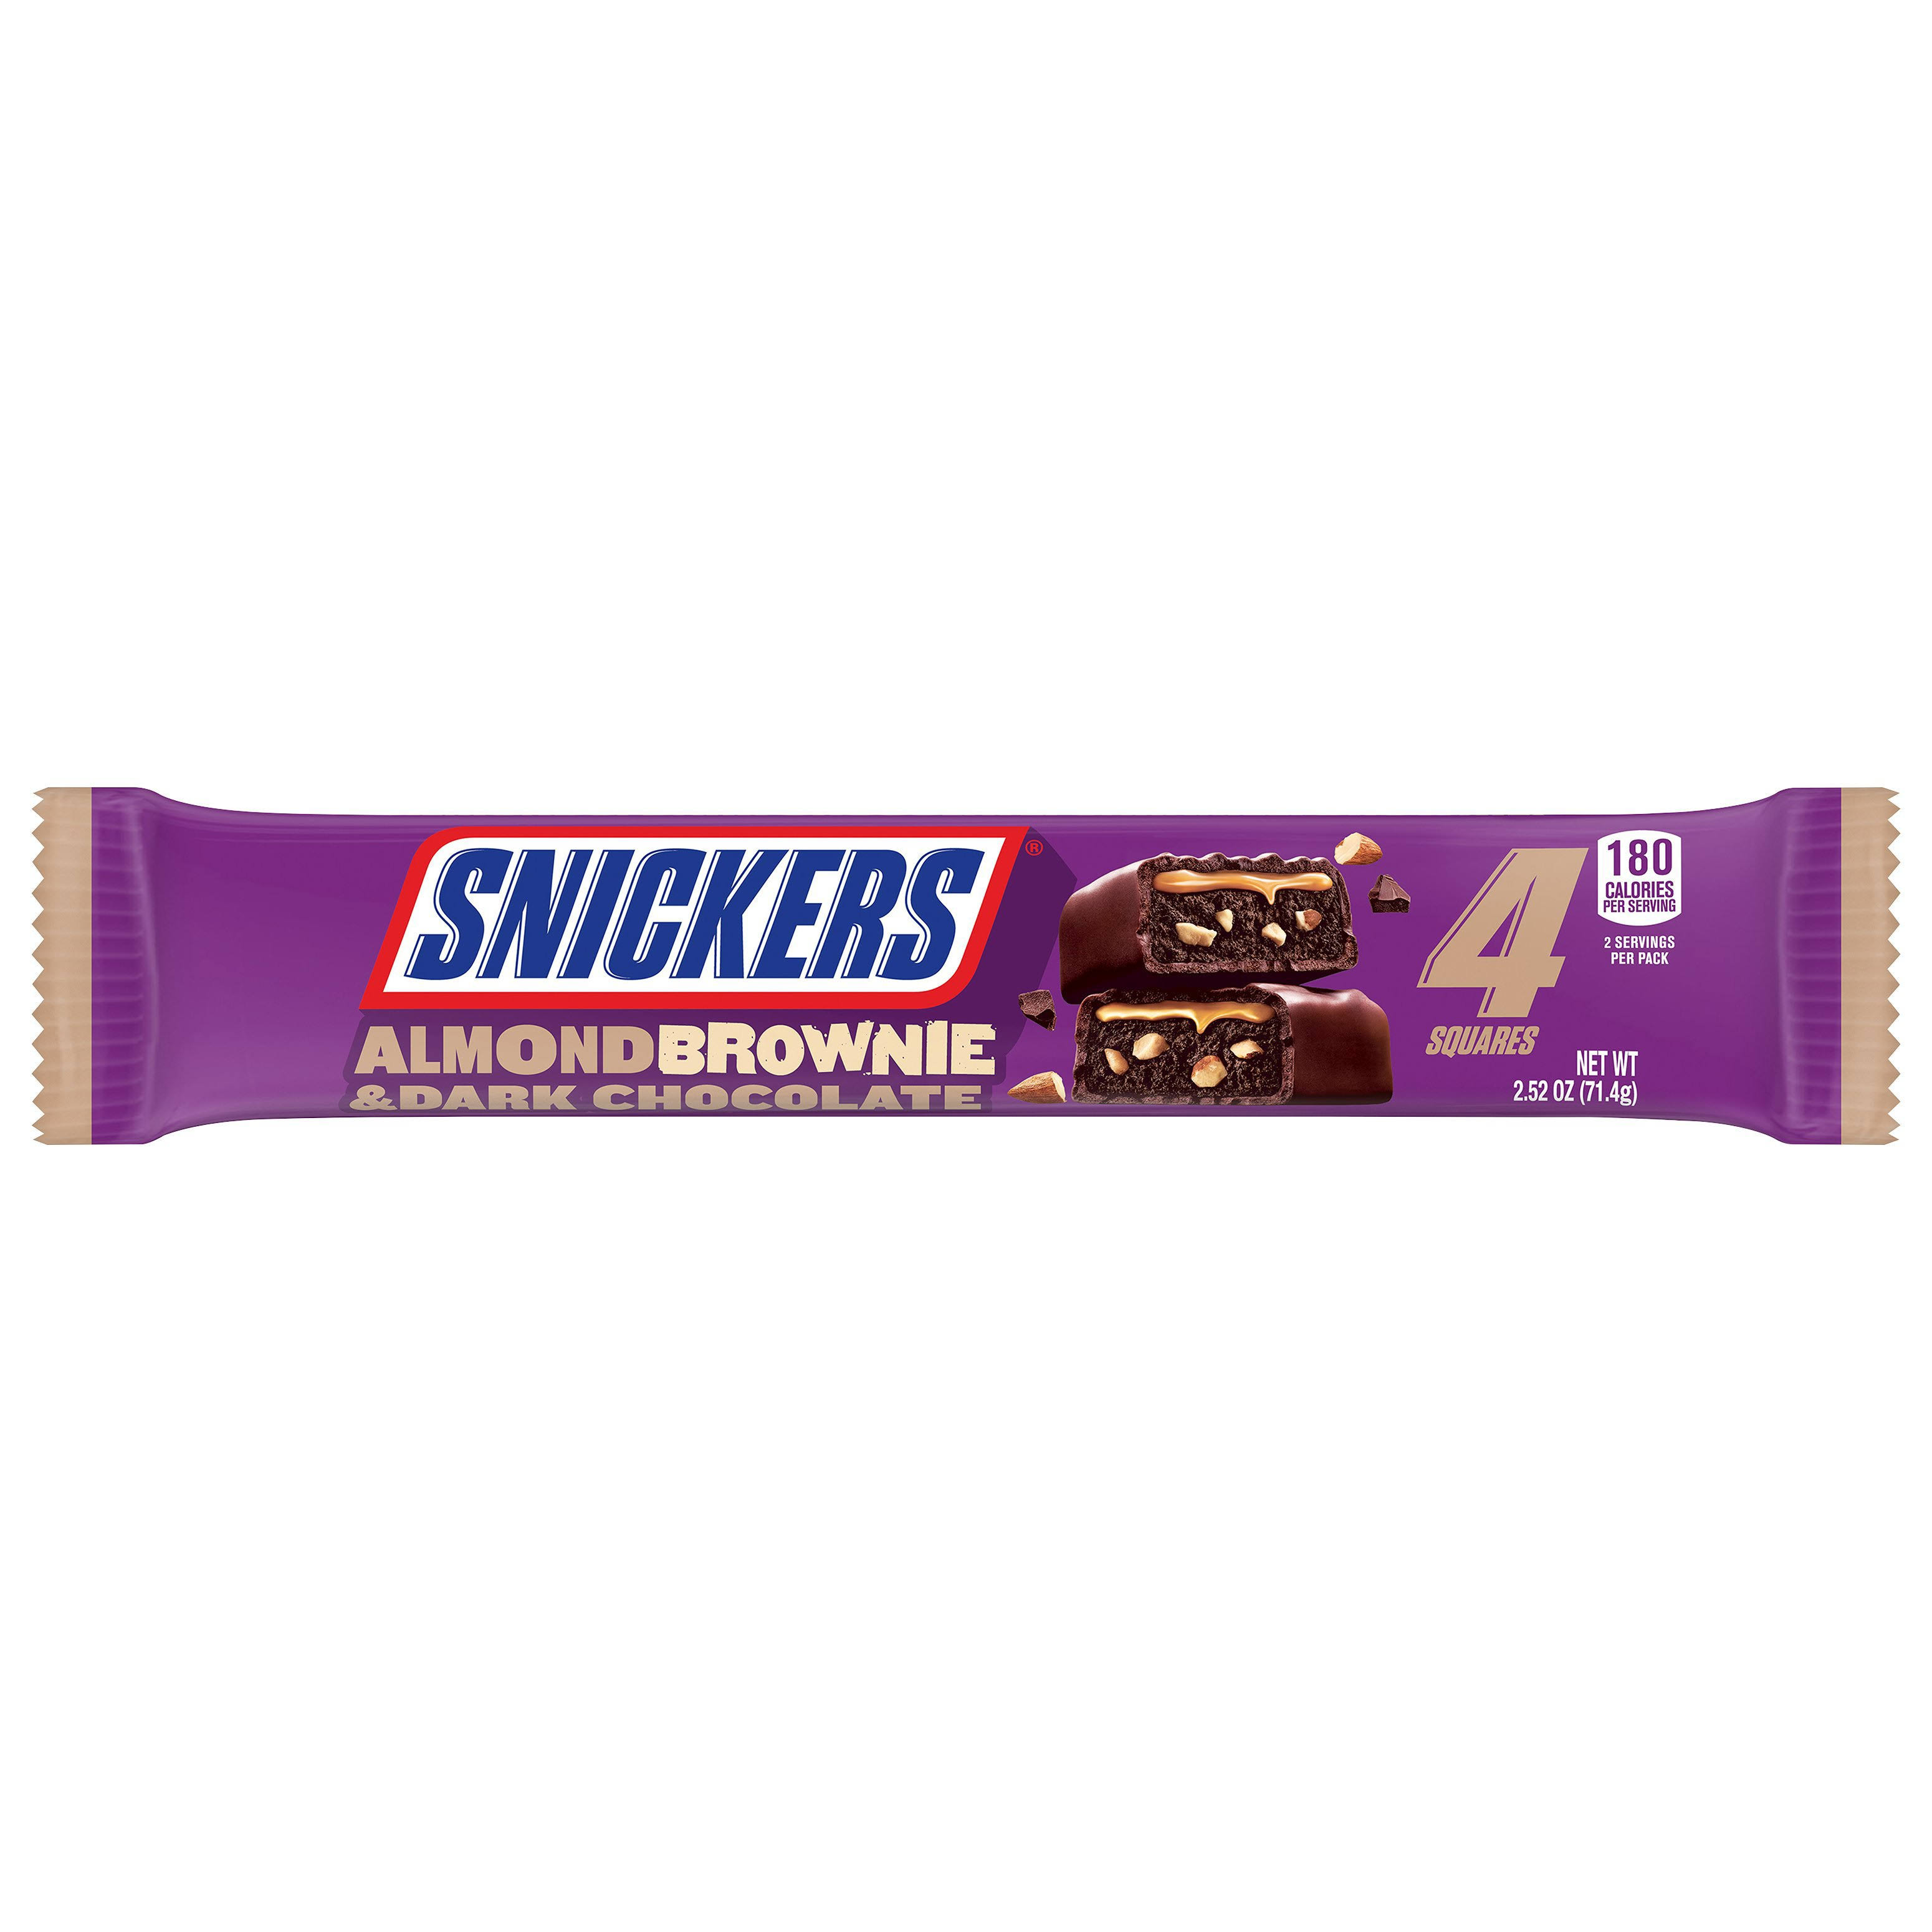 Snickers Brownie Squares, Almond & Dark Chocolate - 4 squares, 2.52 oz